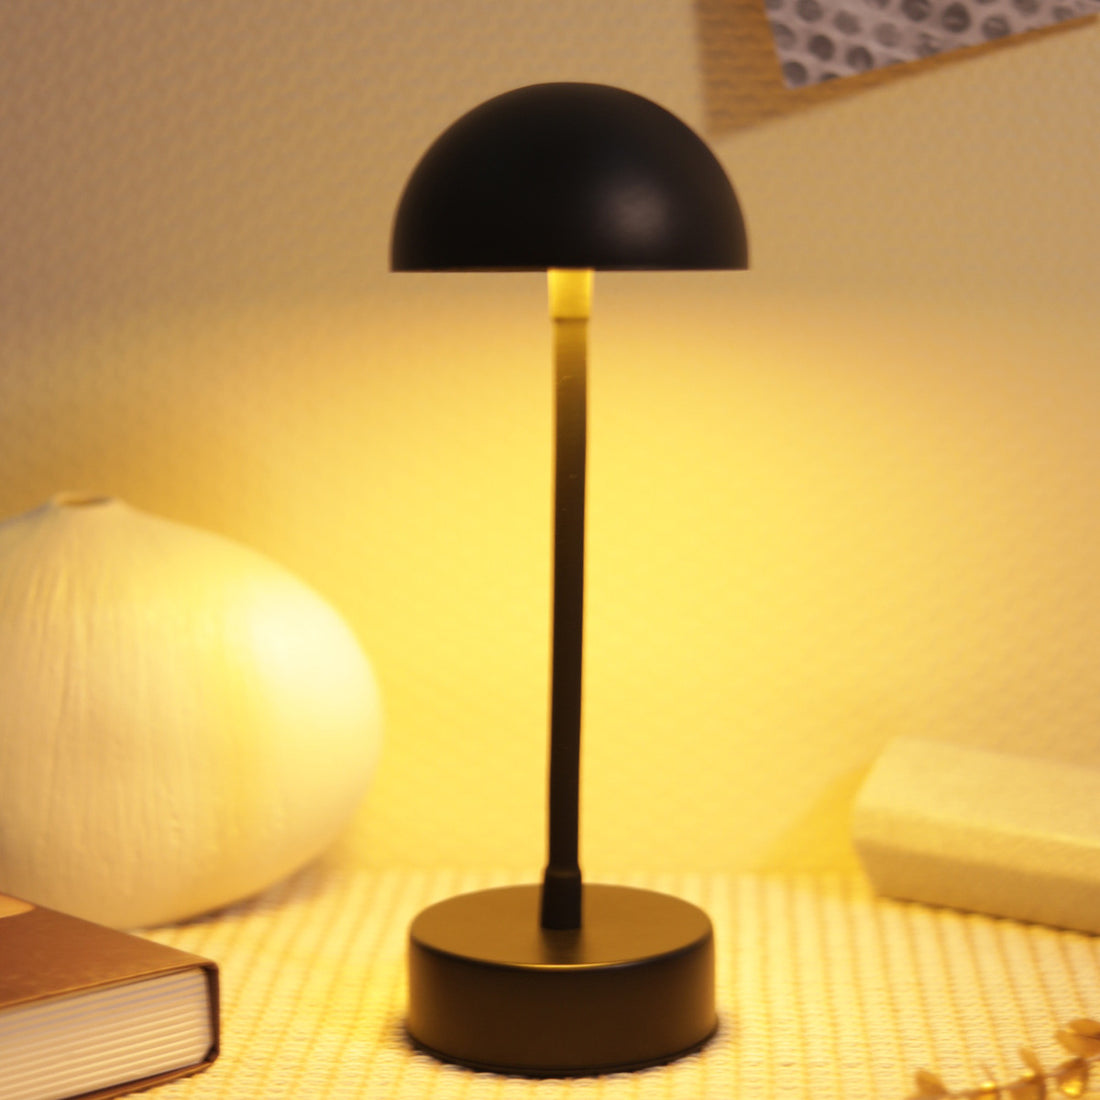 Creative Mushroom Table Lamp Simple LED Atmosphere Warm Light Small Night Lamp